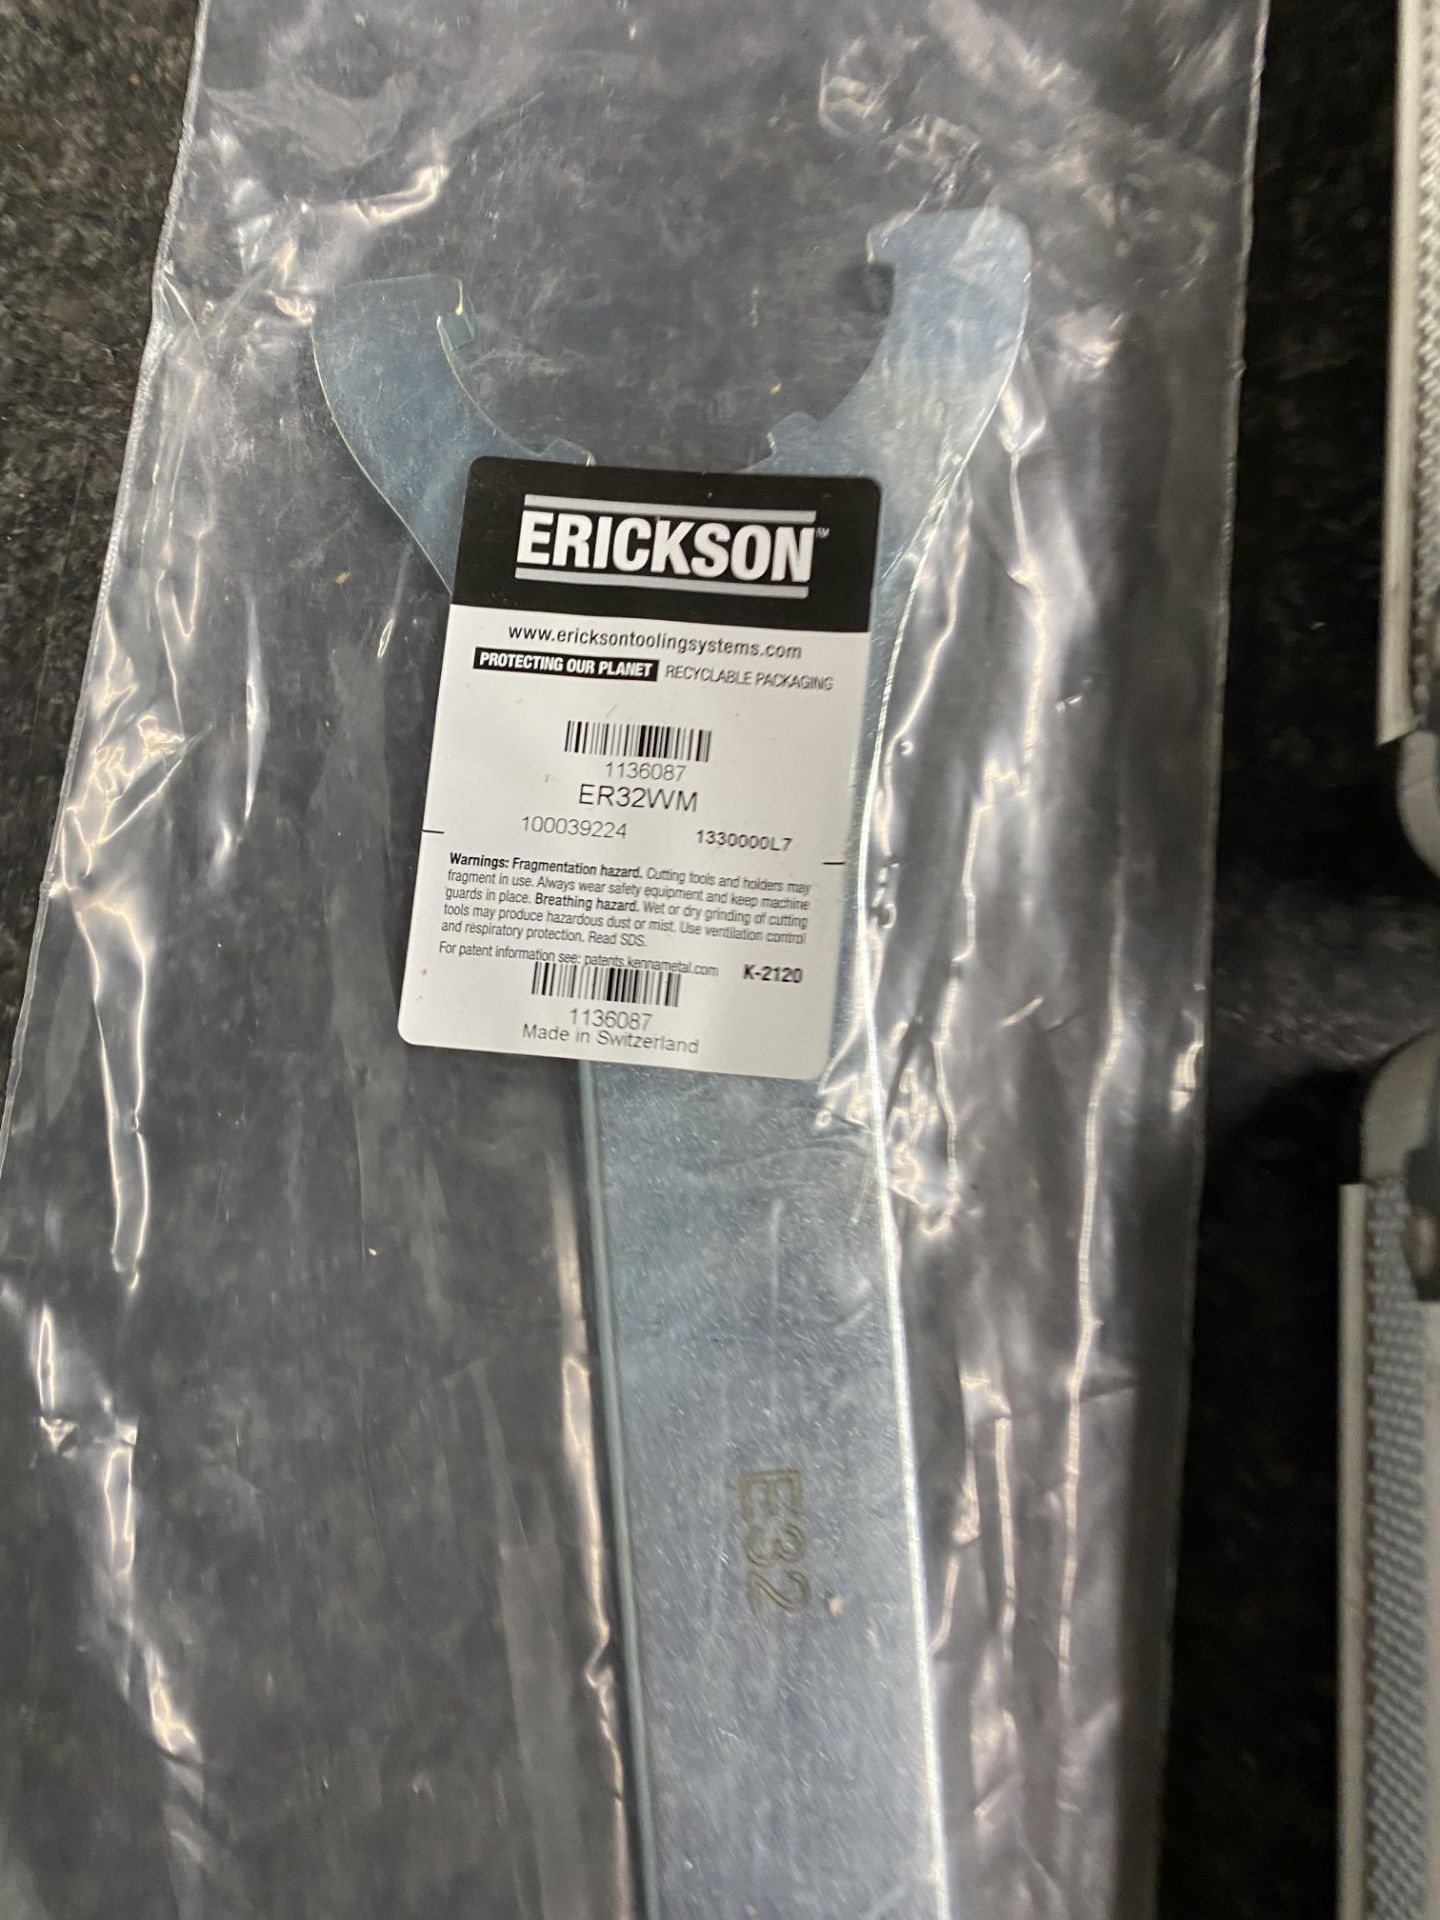 HR Plumbers Holesaw Kit 9 Pc Bi-Metal Kit with Erickson ER32WM Wrench - Image 4 of 9